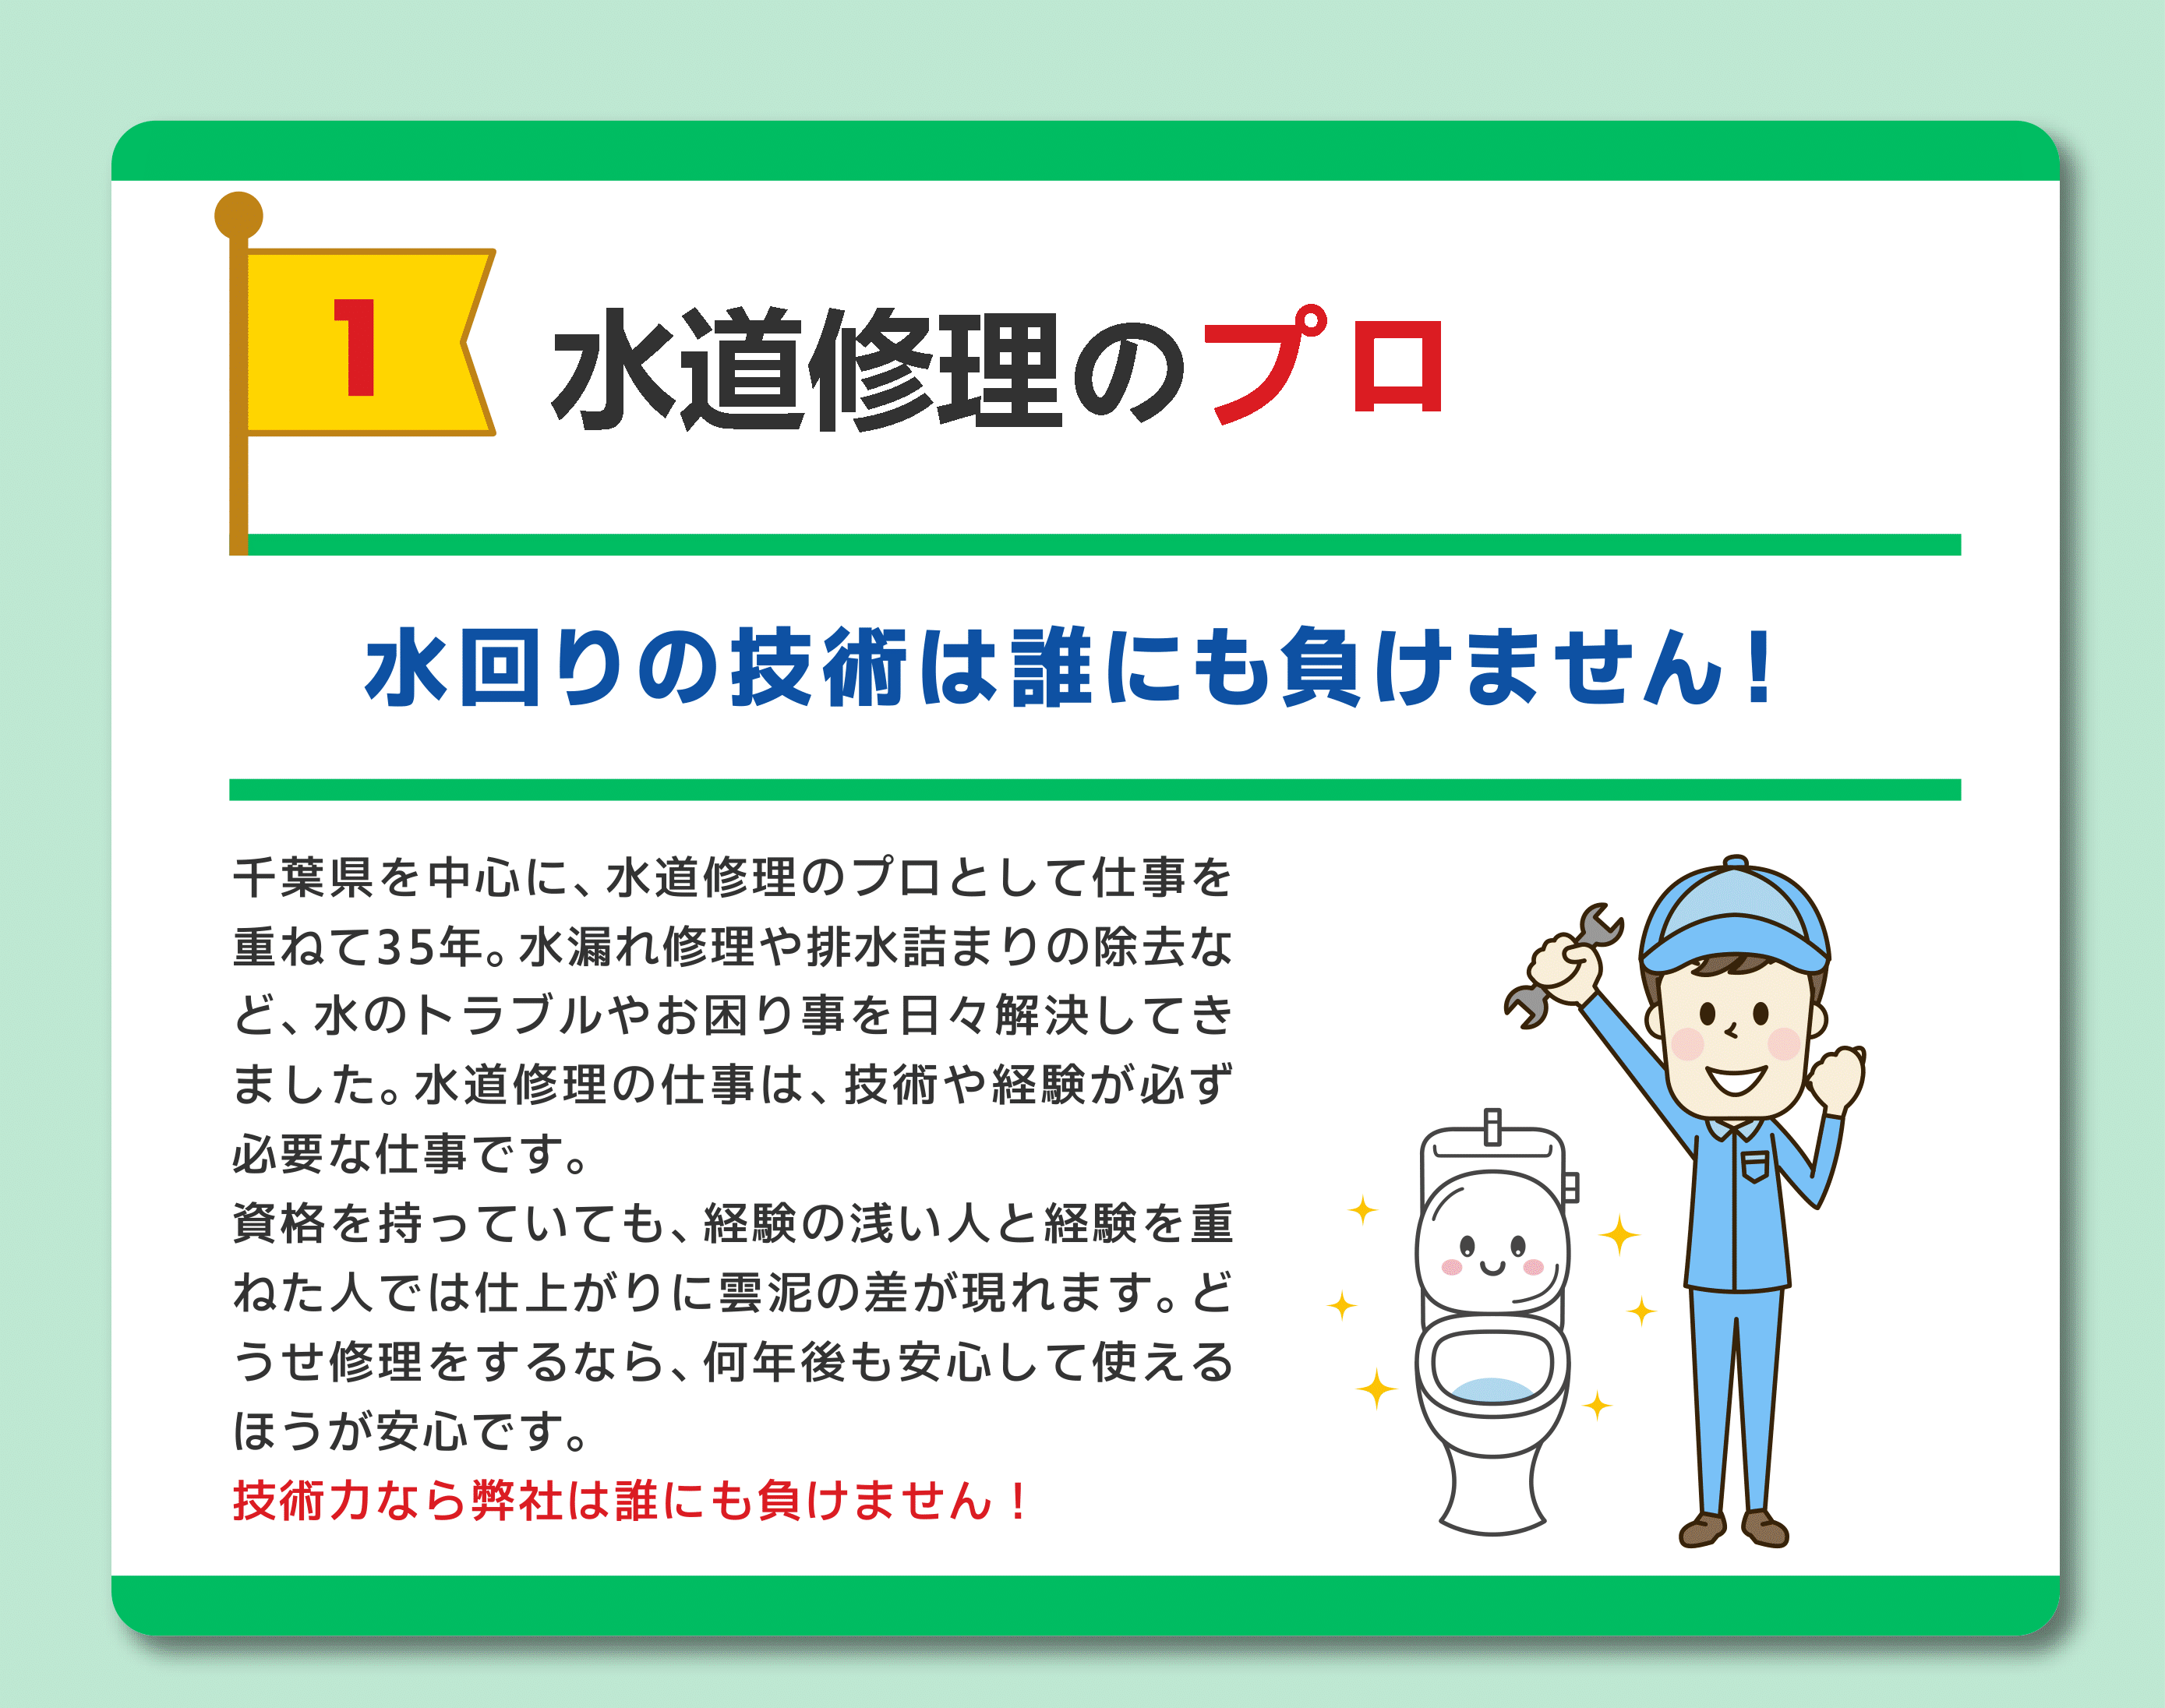 水道修理のプロフェッショナル
水回りの技術は誰にも負けません！
千葉県を中心に水道修理のプロとして仕事を重ねて35年。水漏れy数理や排水詰まりの除去など、水のトラブルを解決してきました。
